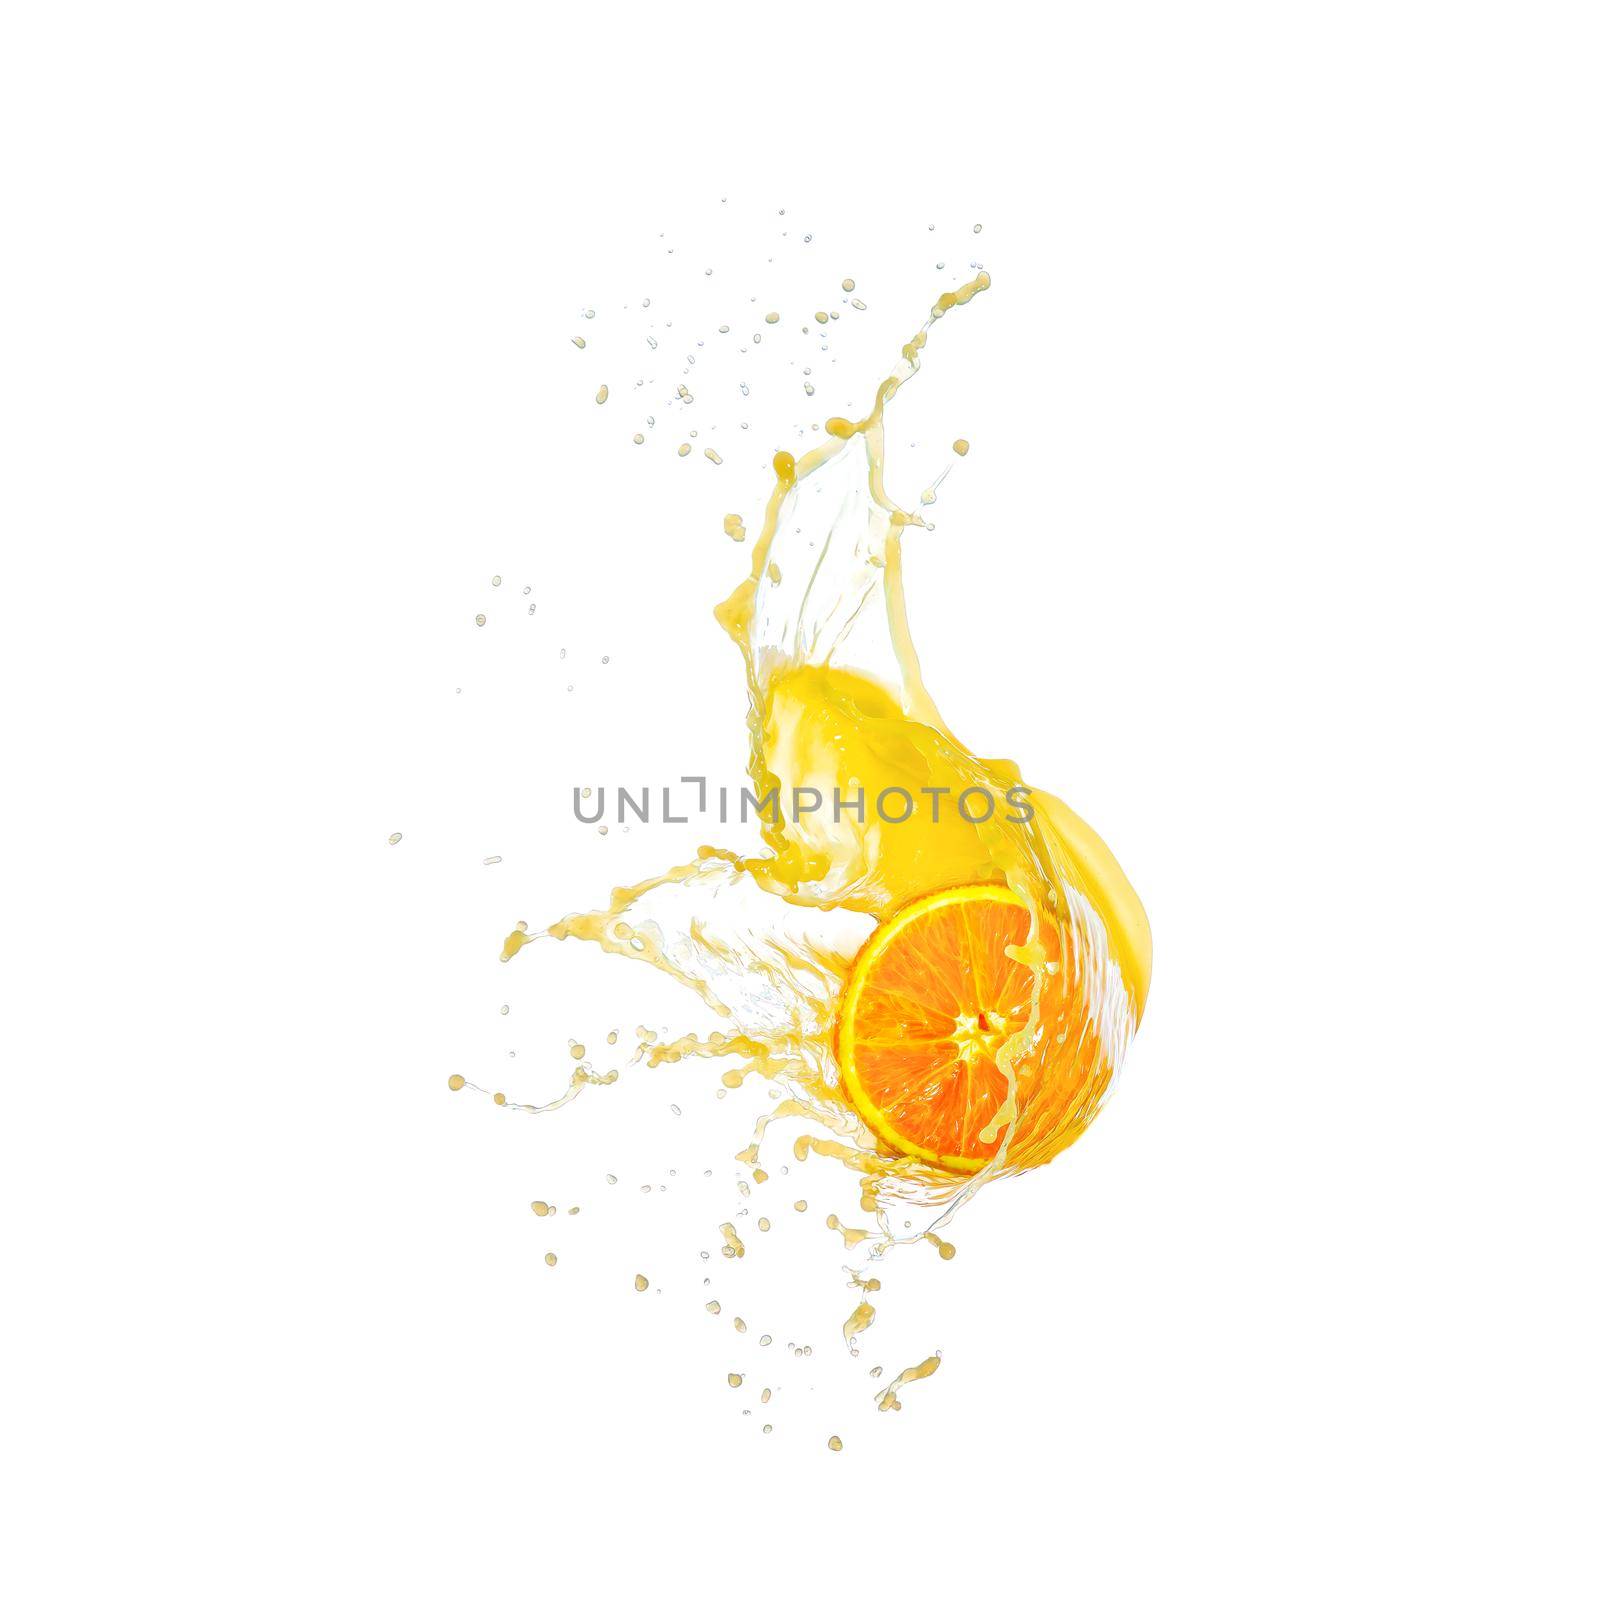 Sliced orange fruit splashing around orange juice white background. by PhotoTime